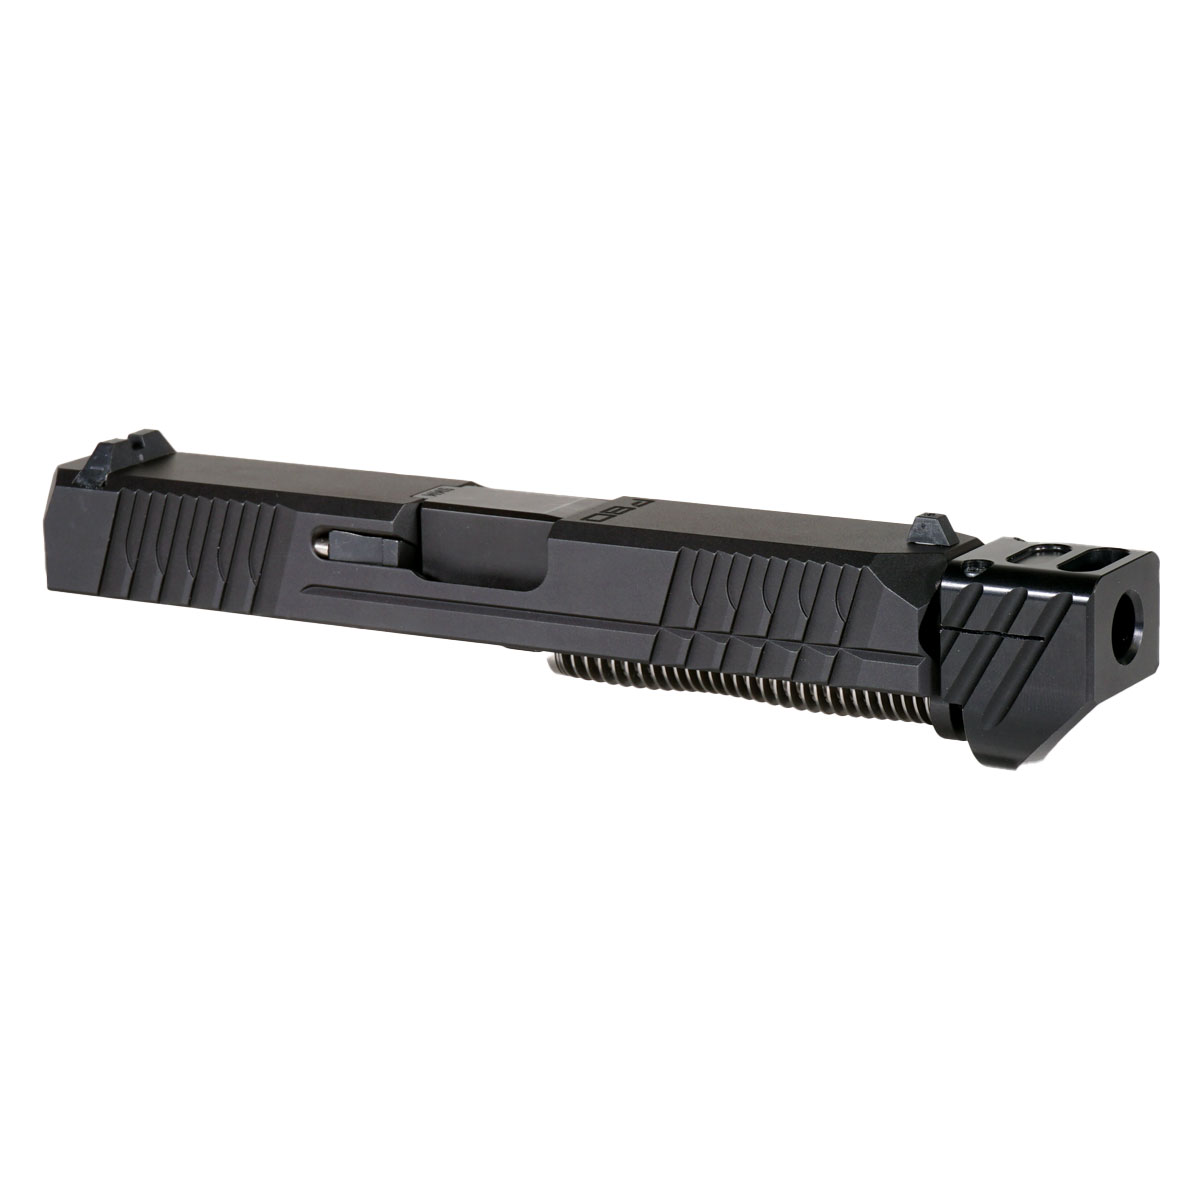 OTD 'Paracausal V4 w/ Black Compensator' 9mm Complete Slide Kit - Glock 19 Gen 1-3 Compatible